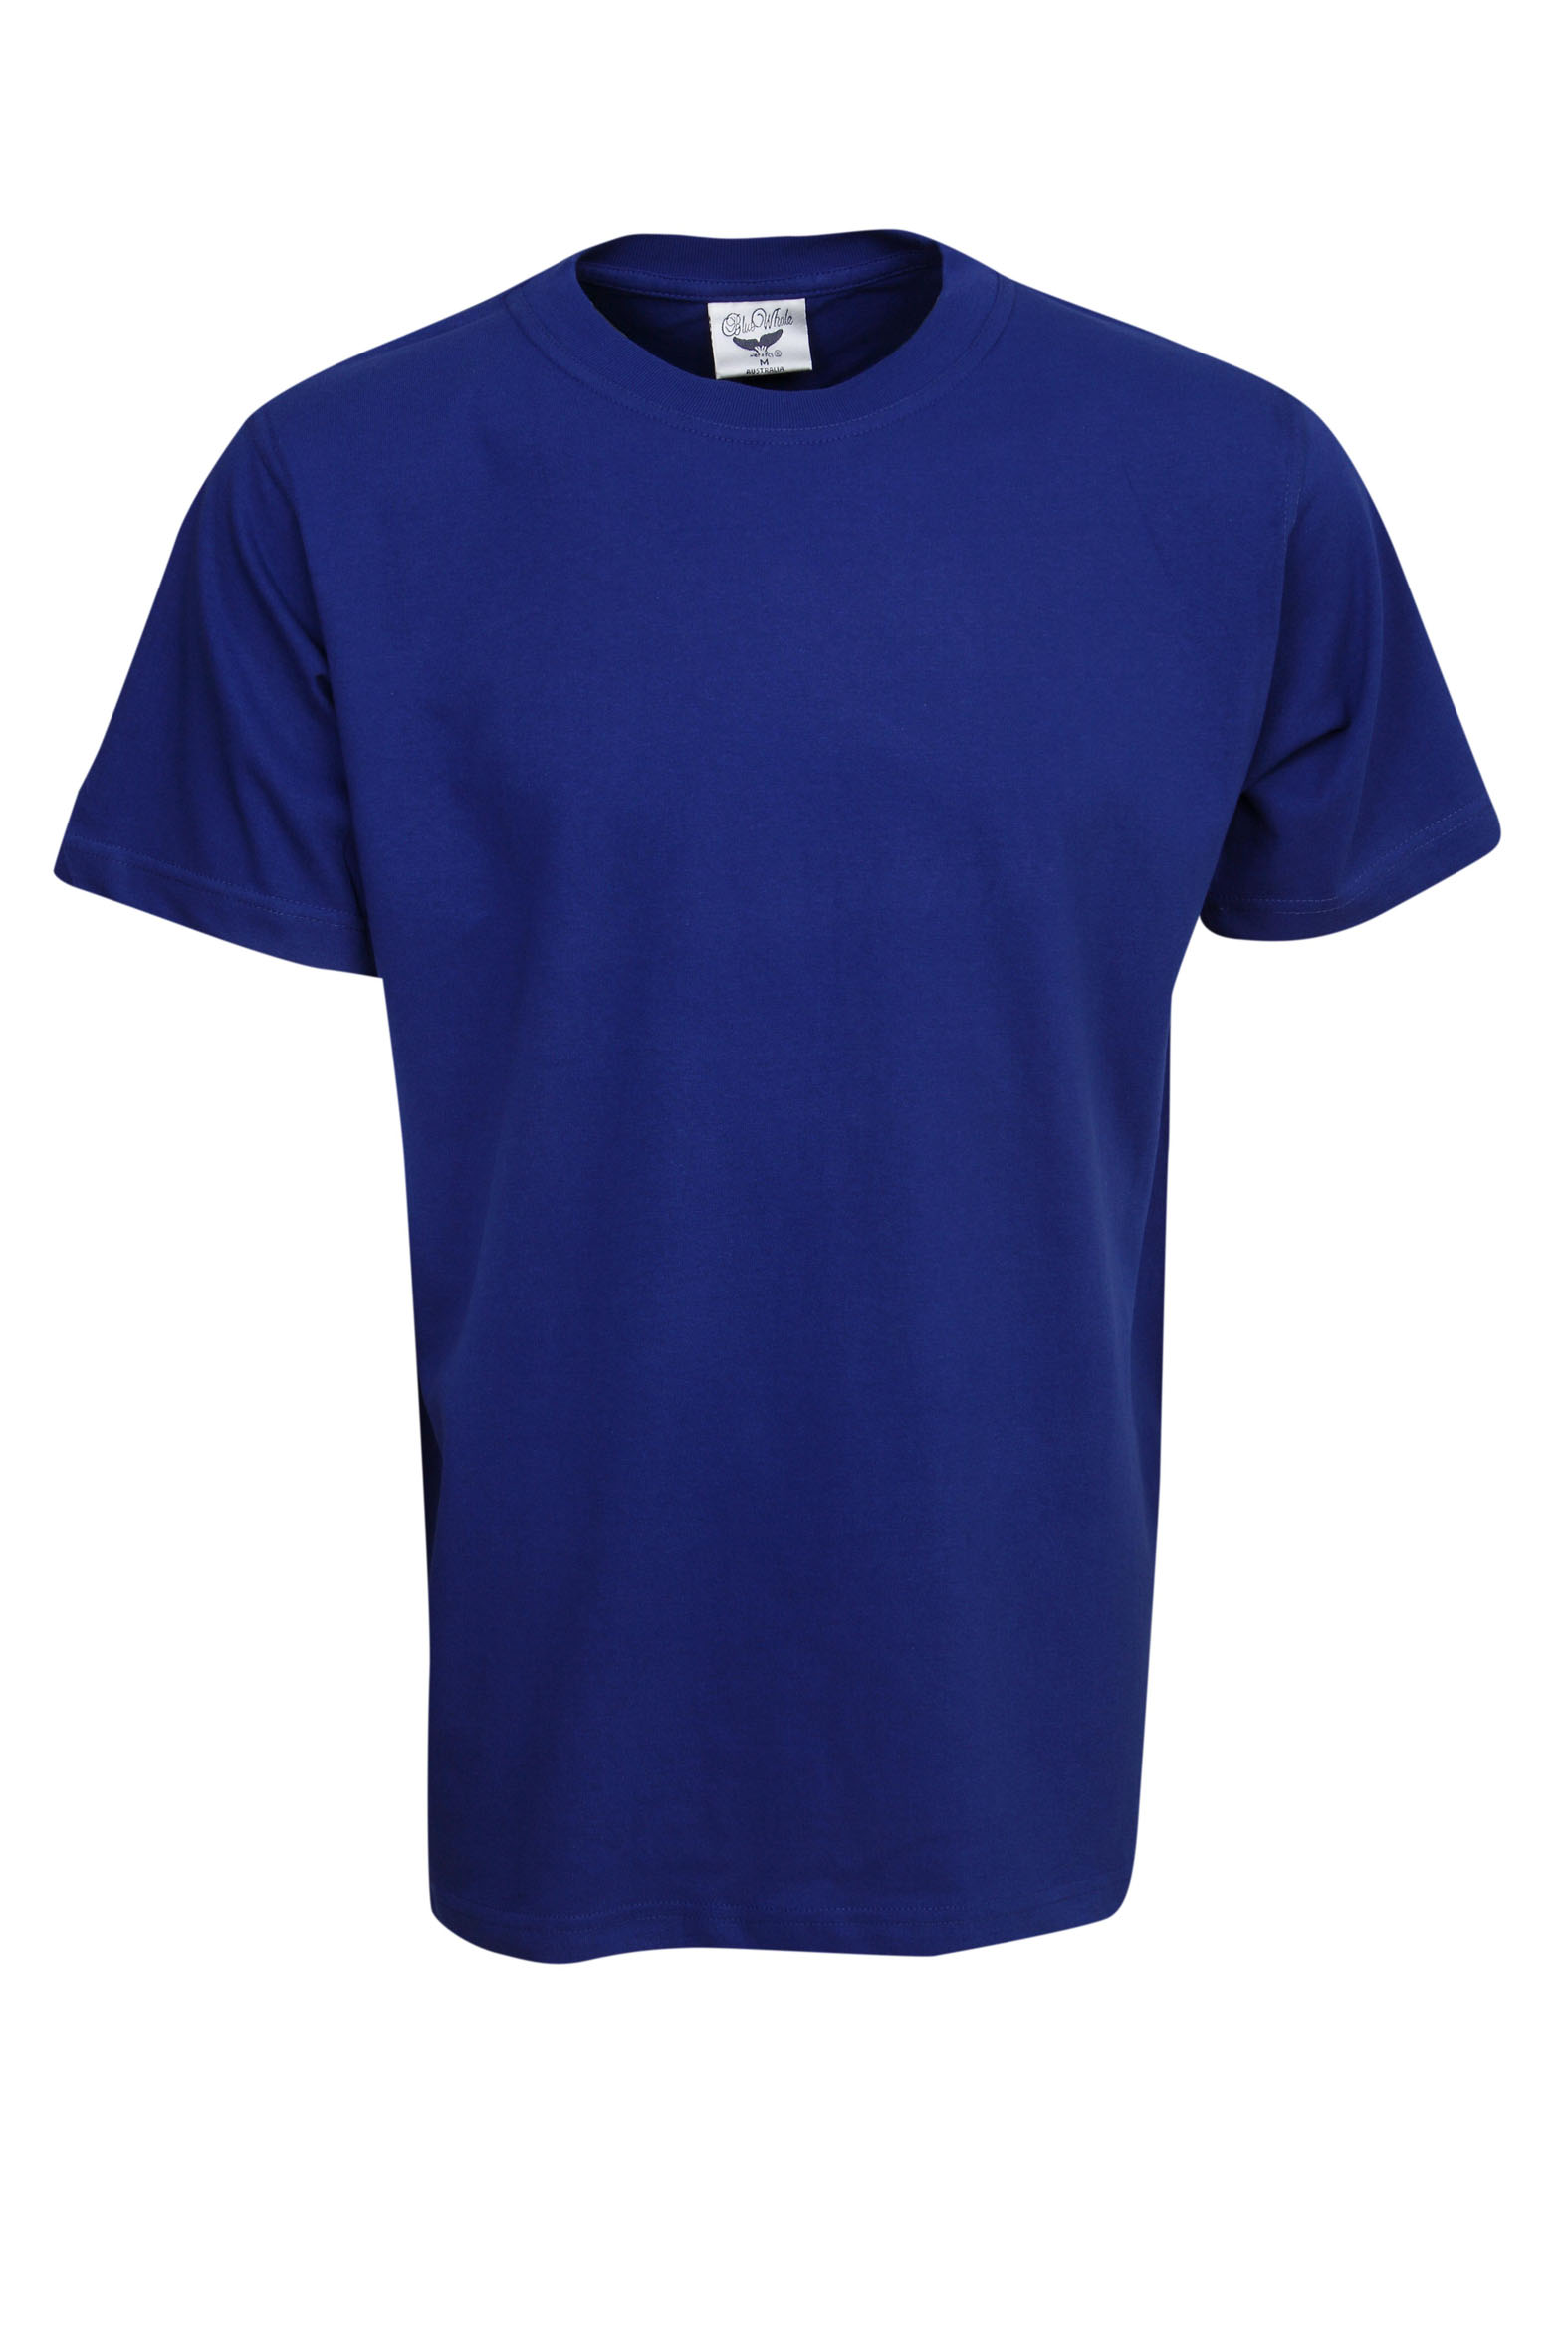 T03 Promo Cotton T-Shirt - Blue Whale